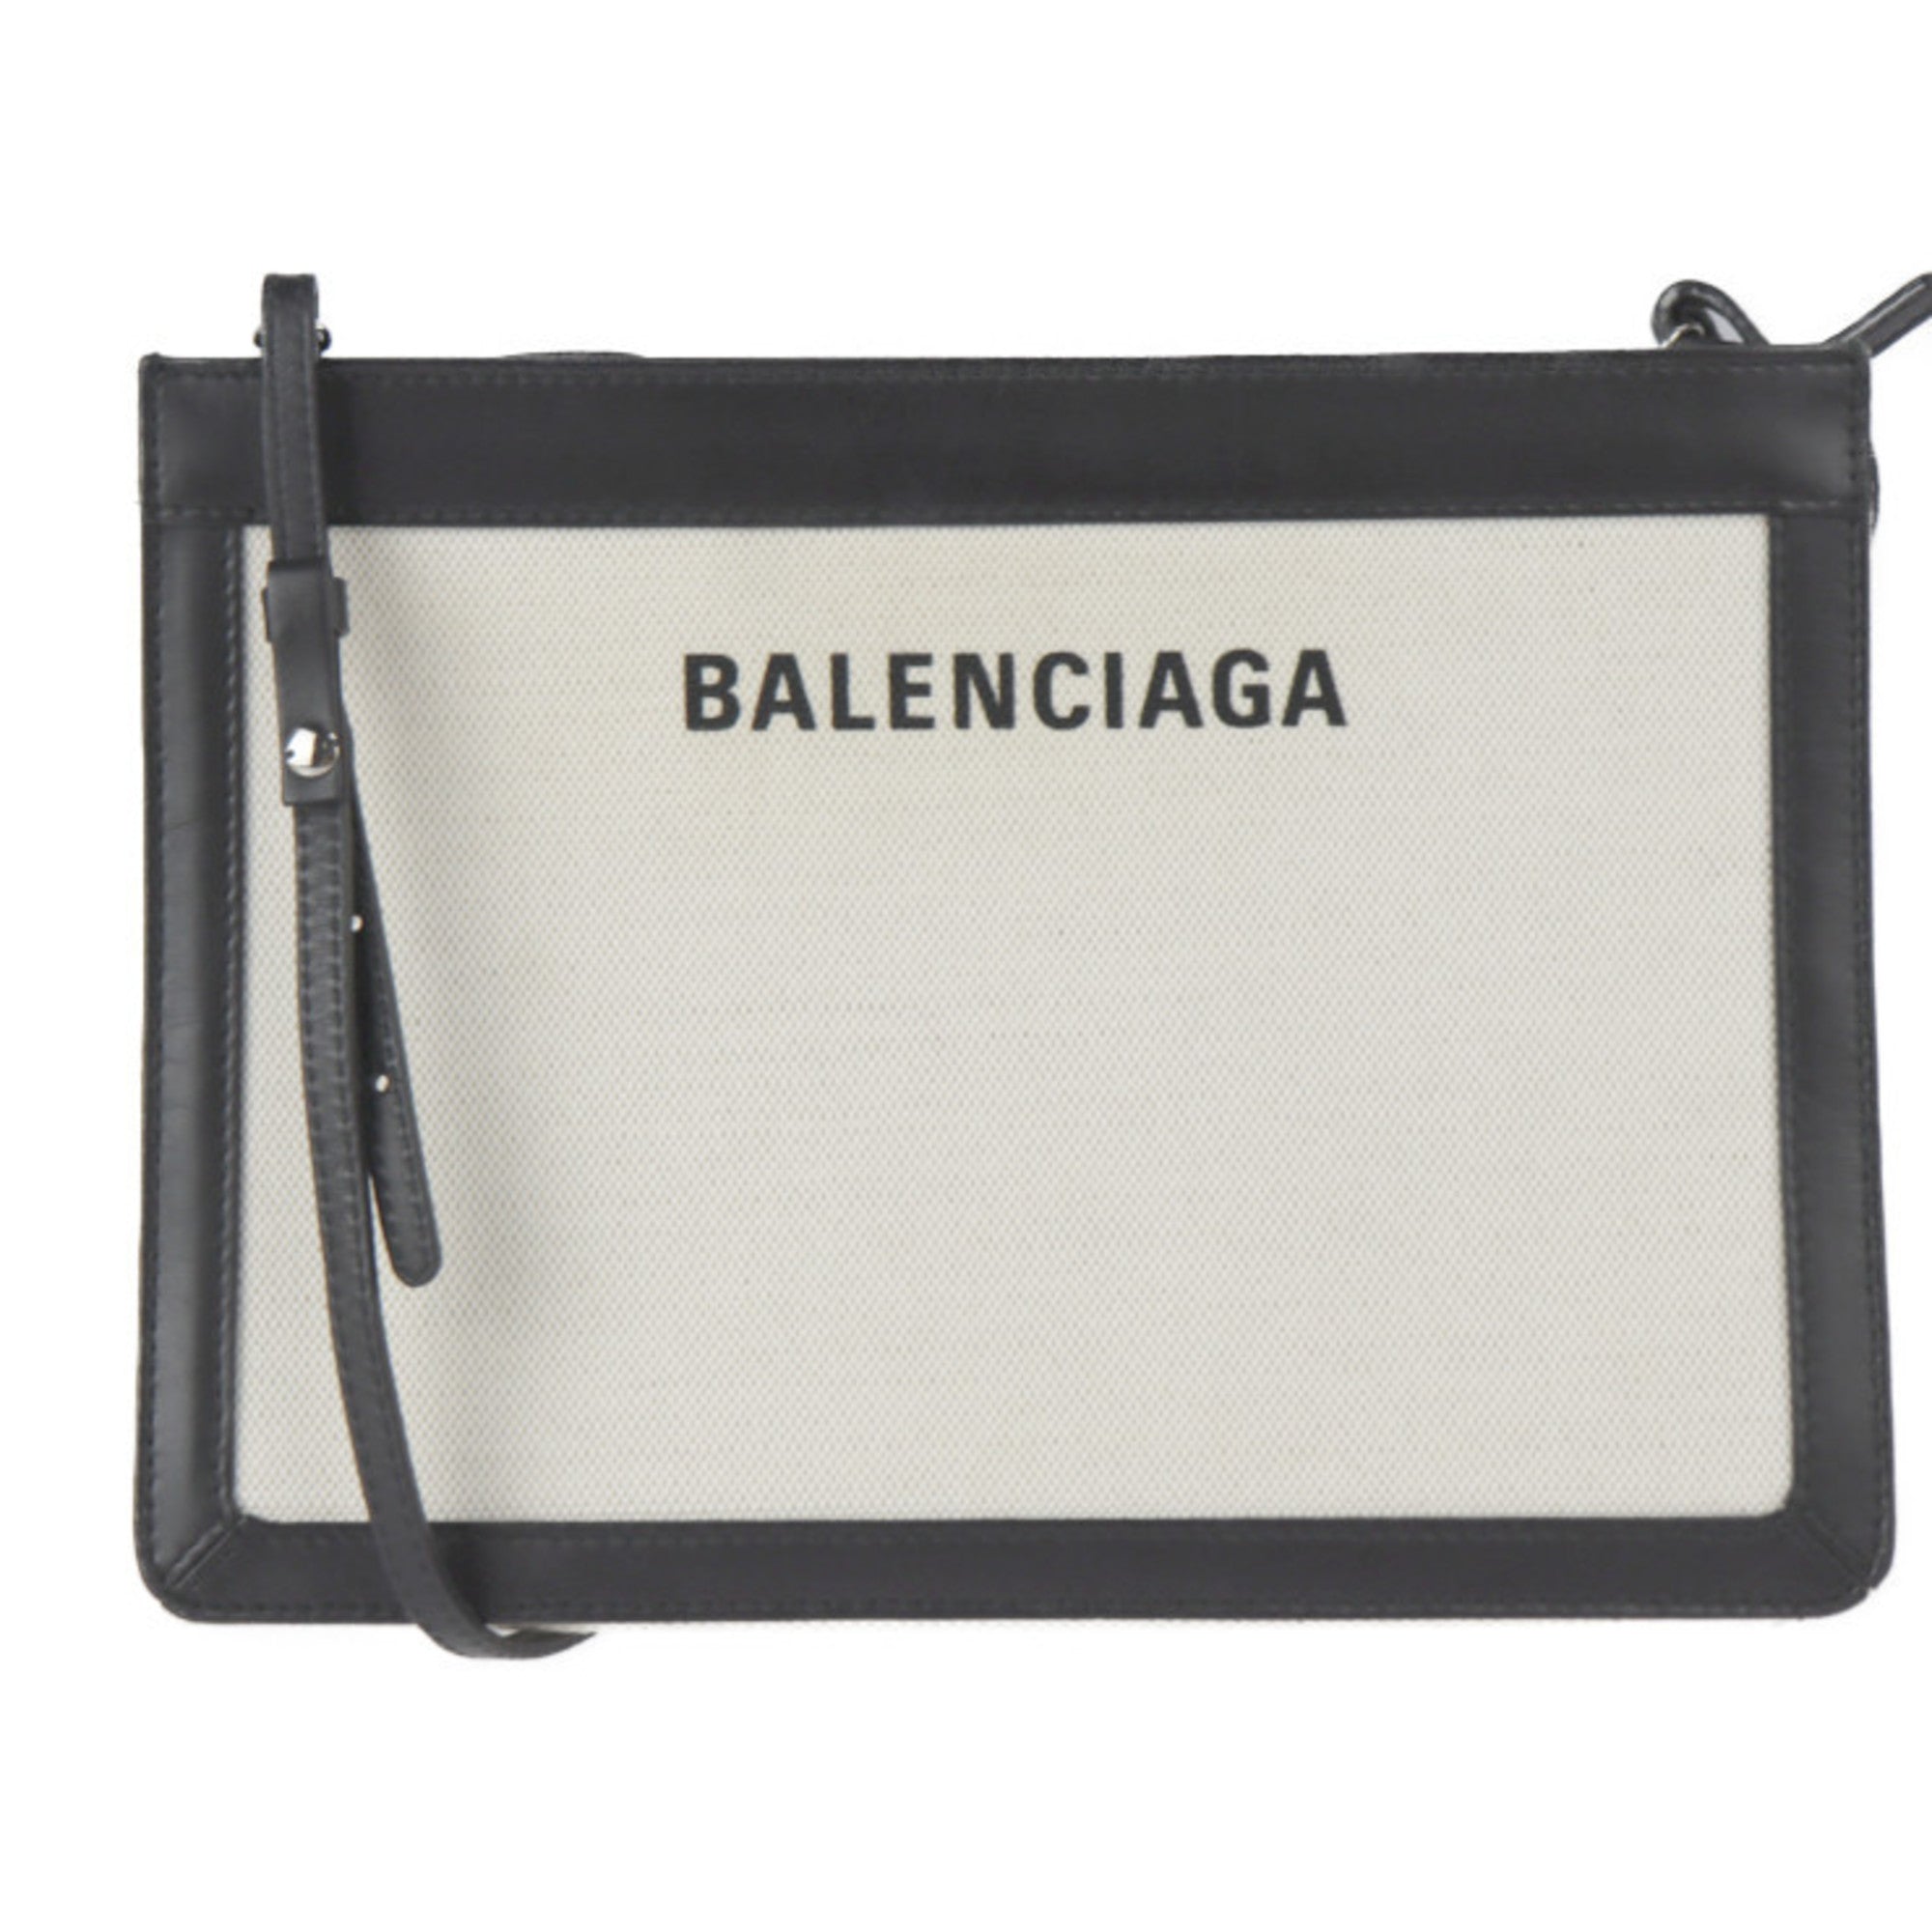 BALENCIAGA Balenciaga navy pochette shoulder bag 339937 canvas leather natural black 2WAY second-0